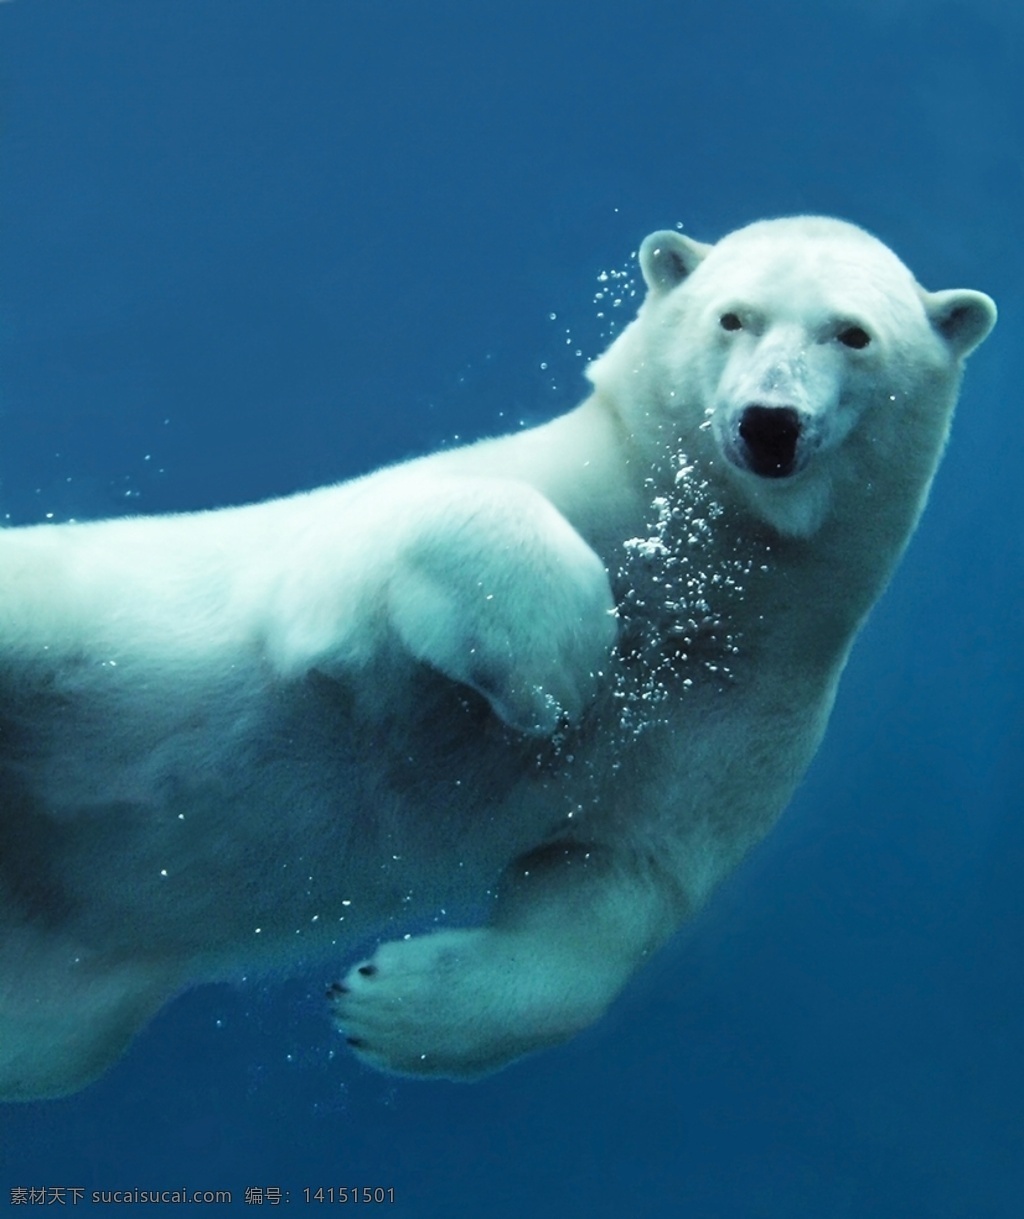 北极熊 熊 小白熊 北极 极地 动物 野生动物 雪 水 海水 野生 肉食动物 白熊 拍照 照片 拍摄 壁纸 高清 特写 生物世界